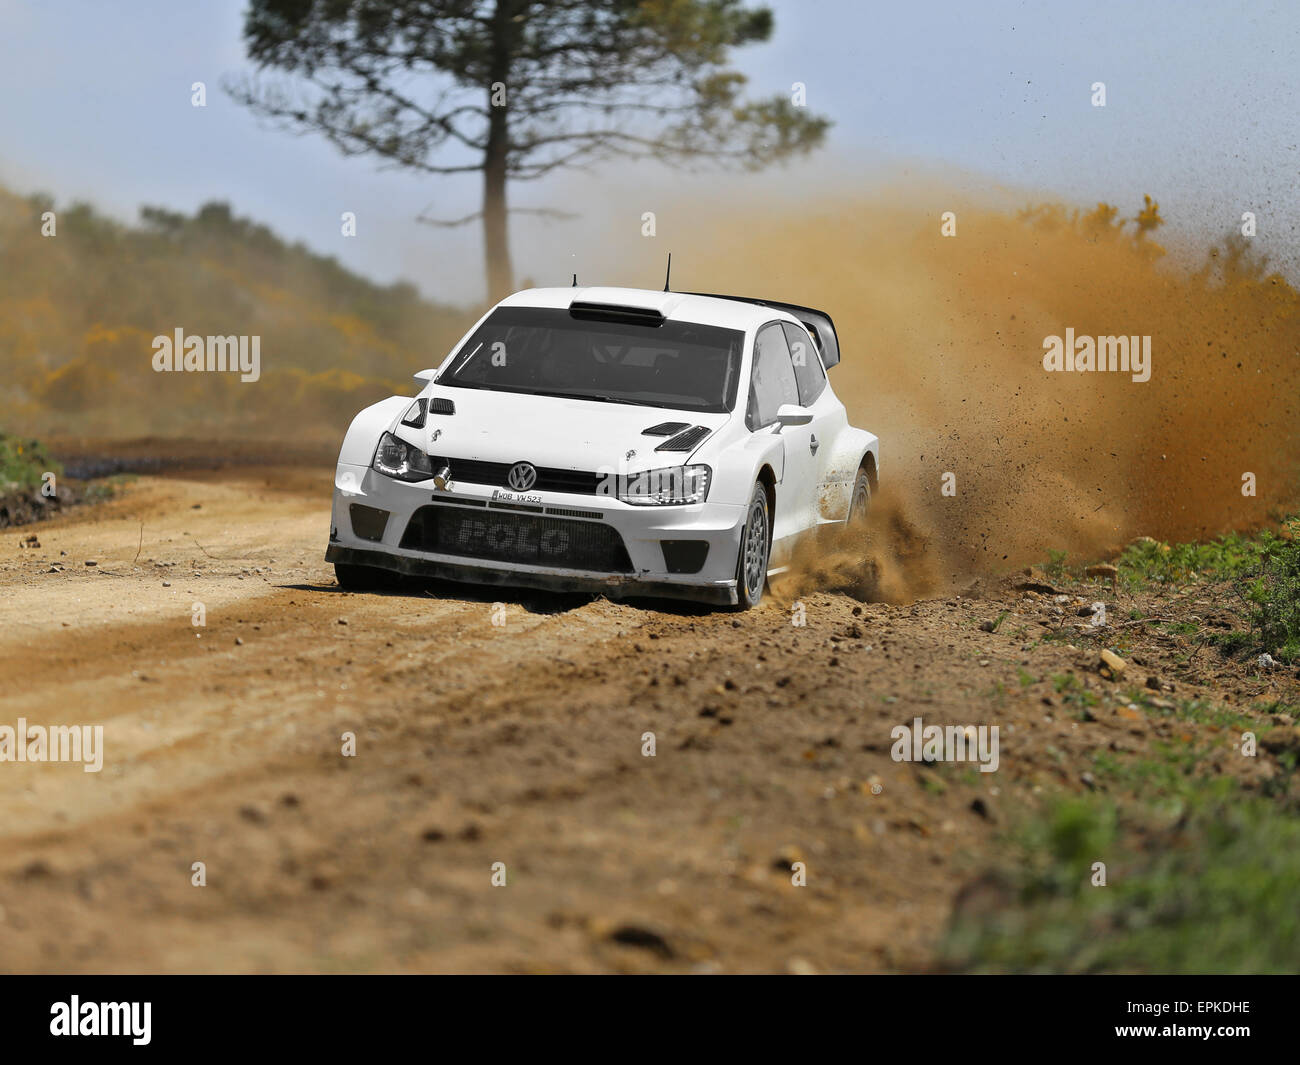 VIANA DO CASTELO, Portogallo - 12 Maggio: Volkswagen Polo R WRC in fase di test per il Rally del Portogallo a Viana do Castelo, Portogallo, 12 maggio 2016. Foto Stock